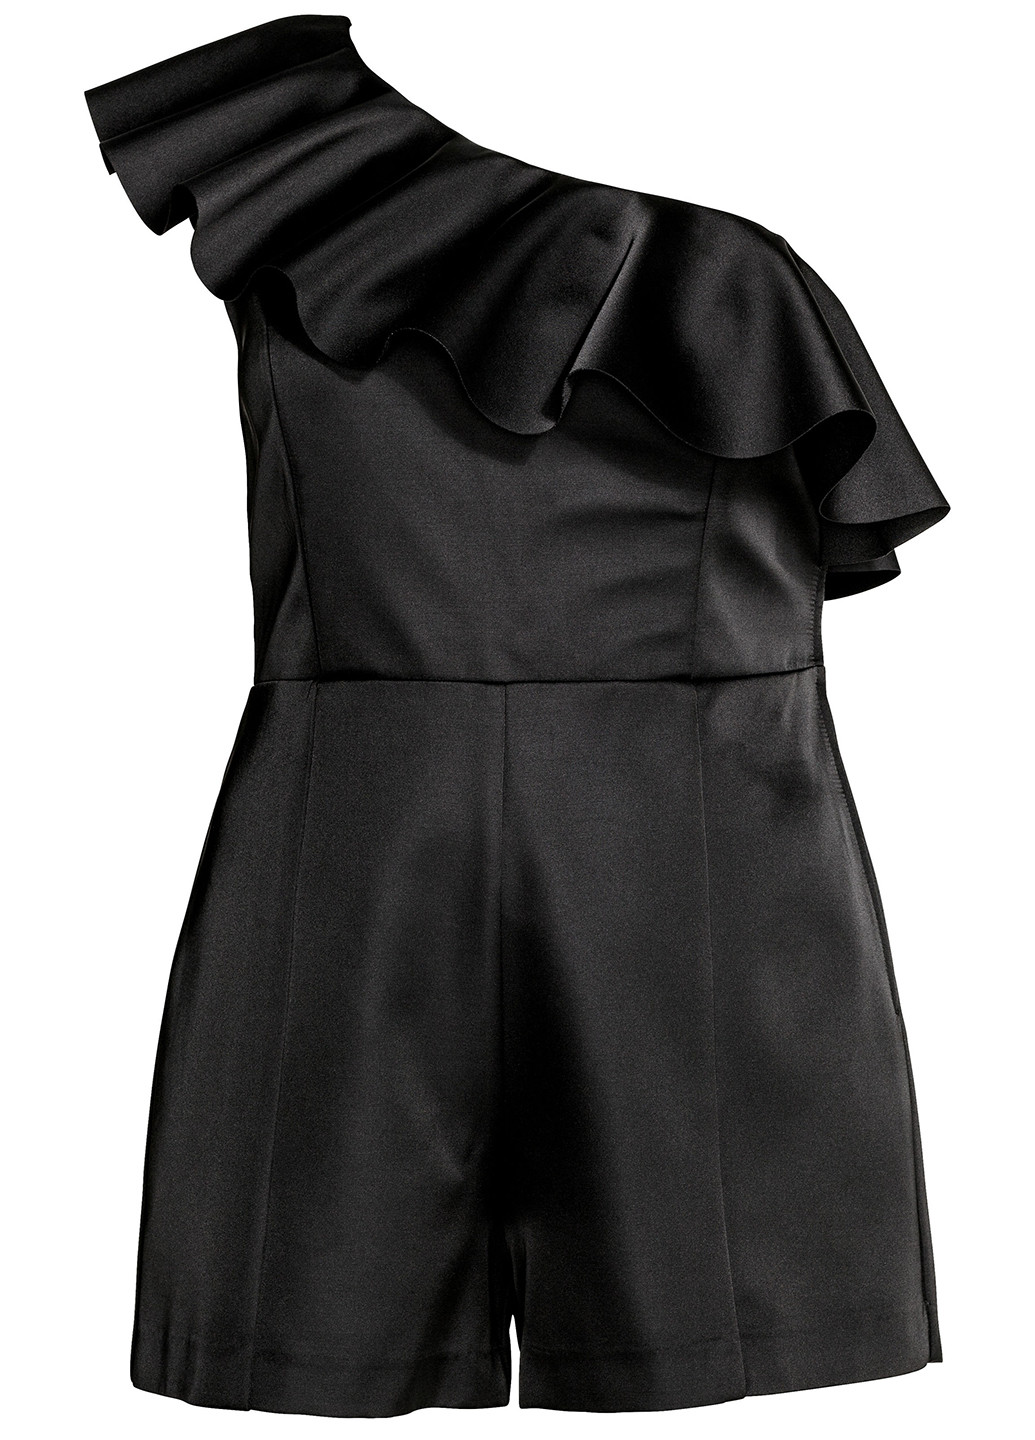 Комбинезон H&M комбинезон-шорты чёрный кэжуал